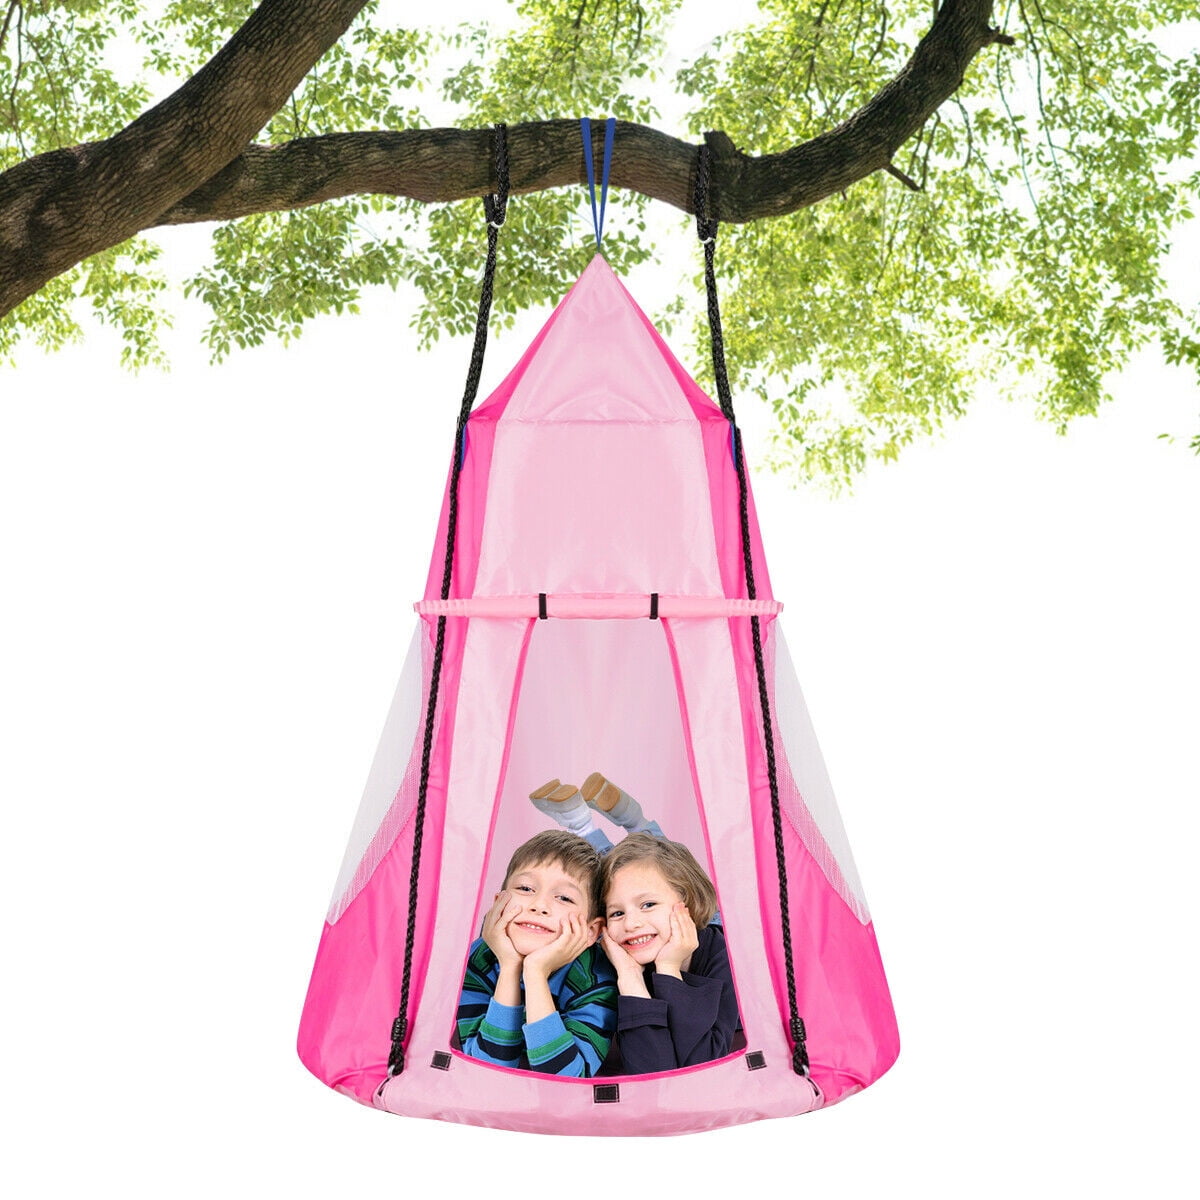 Kids Pod Swing Chair Nook Tent Indoor Outdoor Garden Tree Hanging Seat Hammock